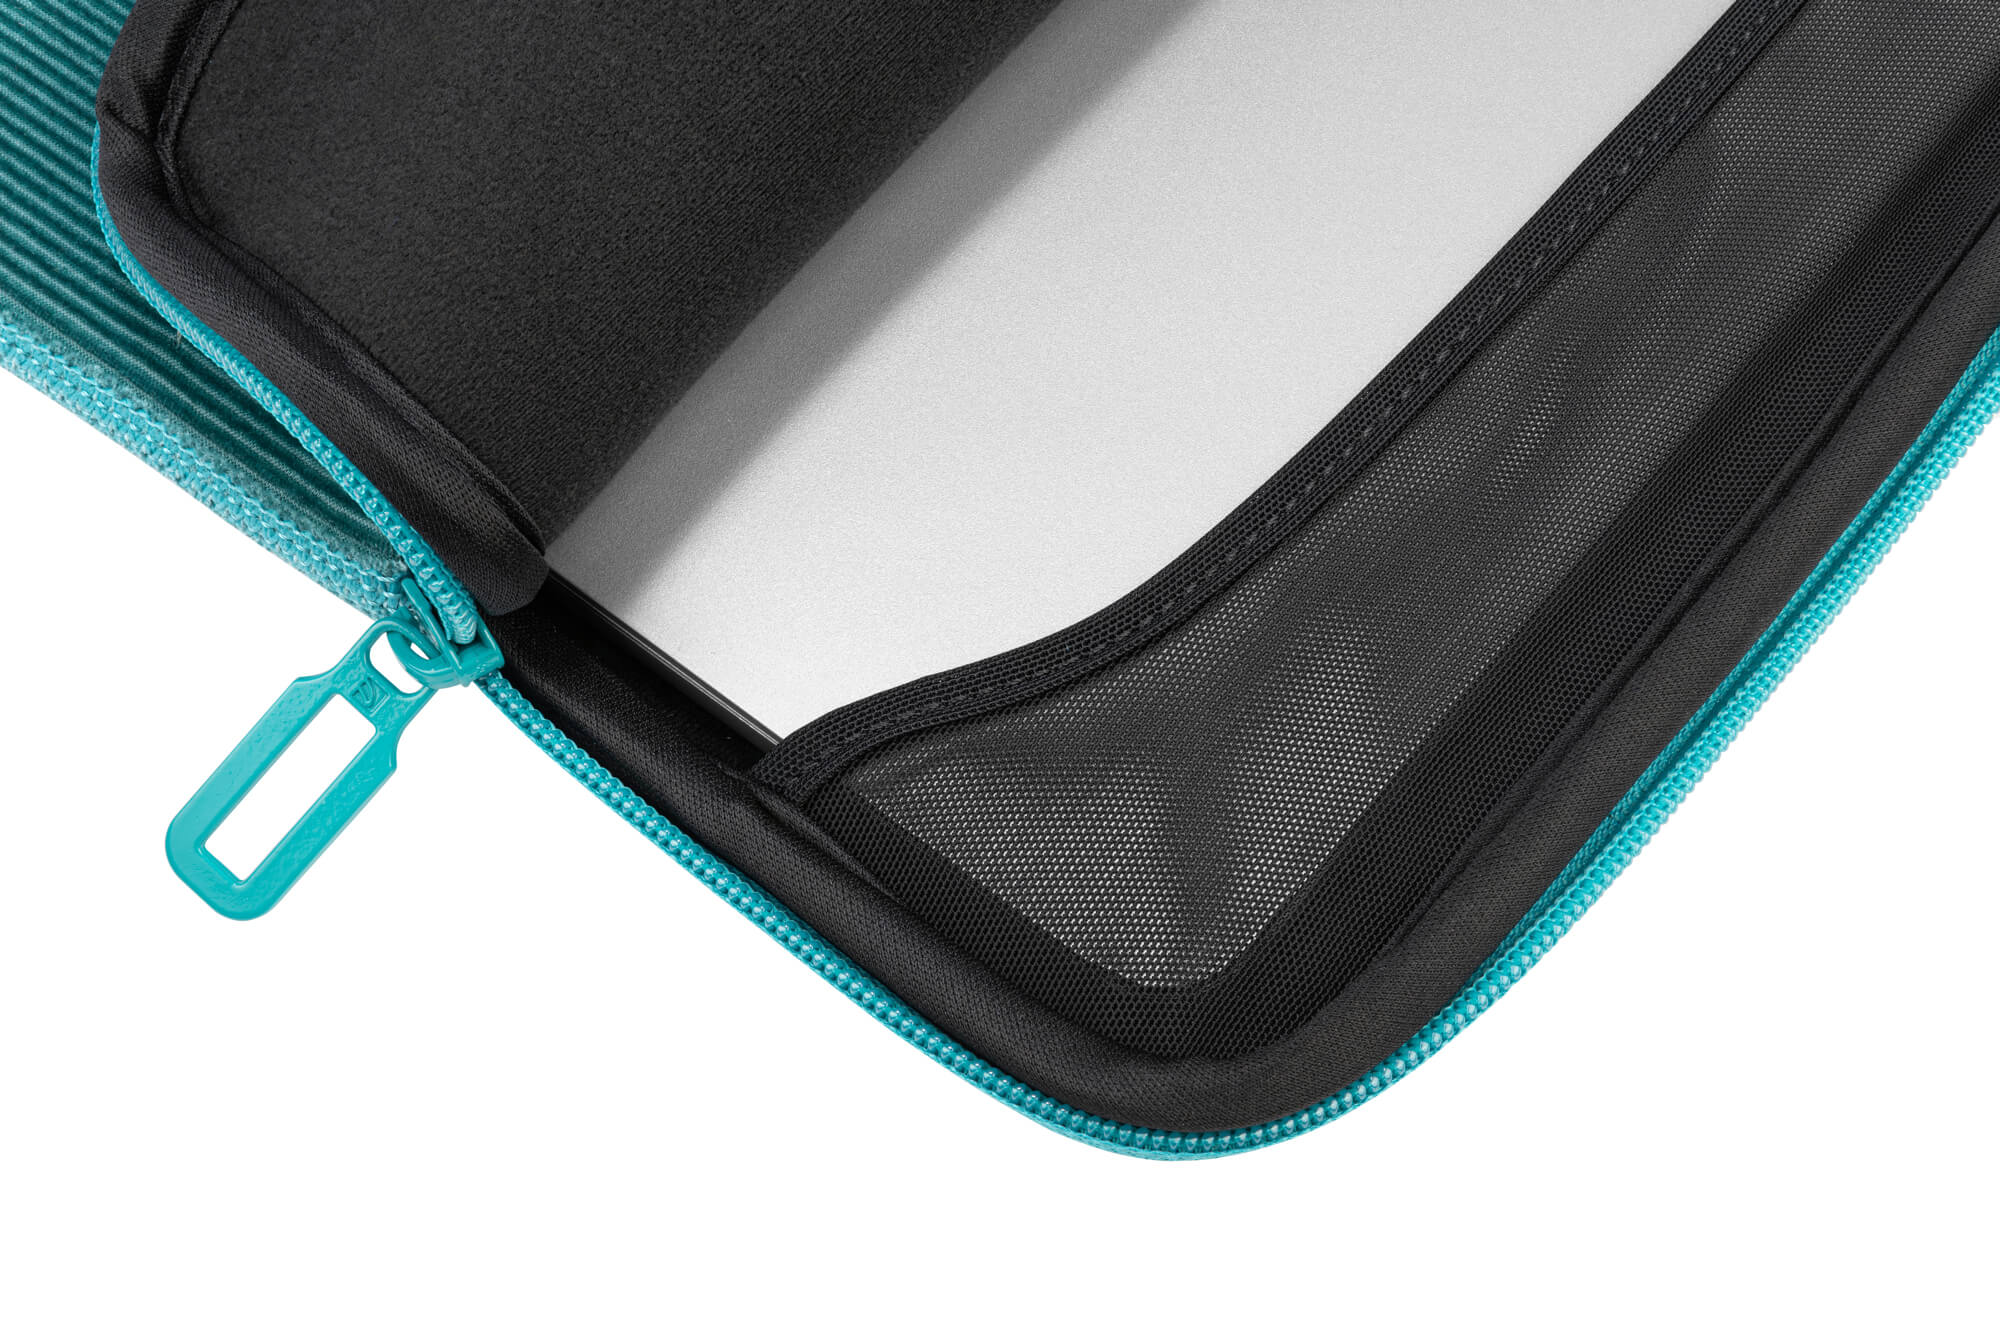 Cordsamt, Second Sleeve Notebooktasche Türkis Apple TUCANO für Skin Velluto